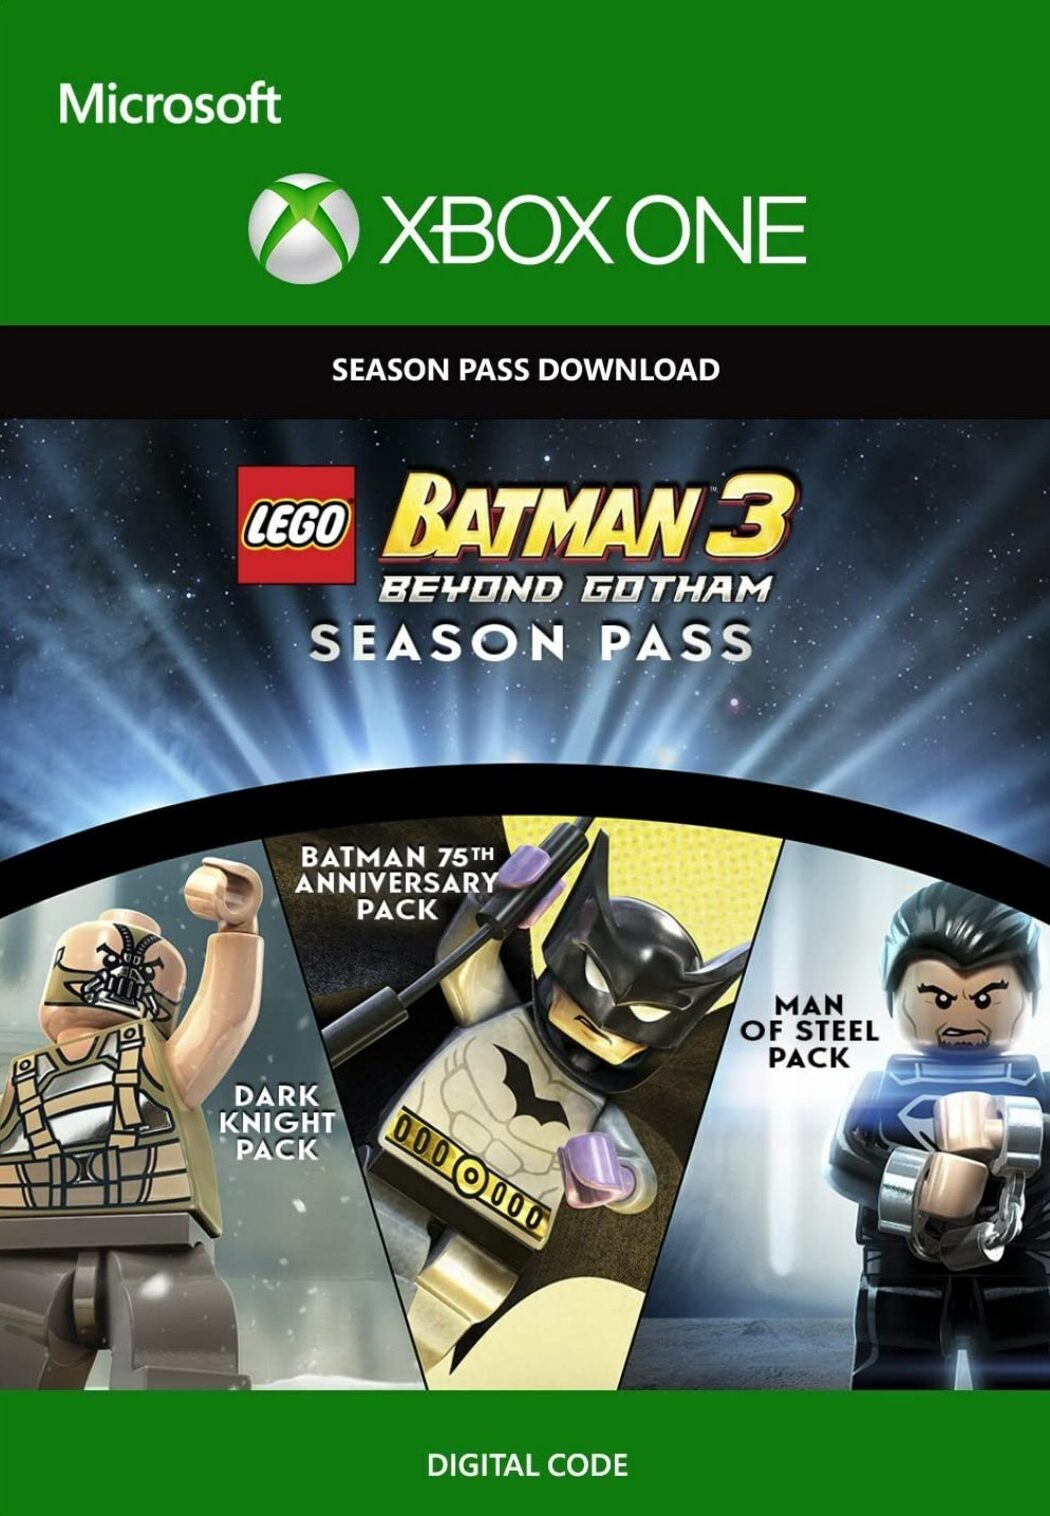 Batman™: Arkham Knight - Crime Fighter Challenge Pack #4 no Steam